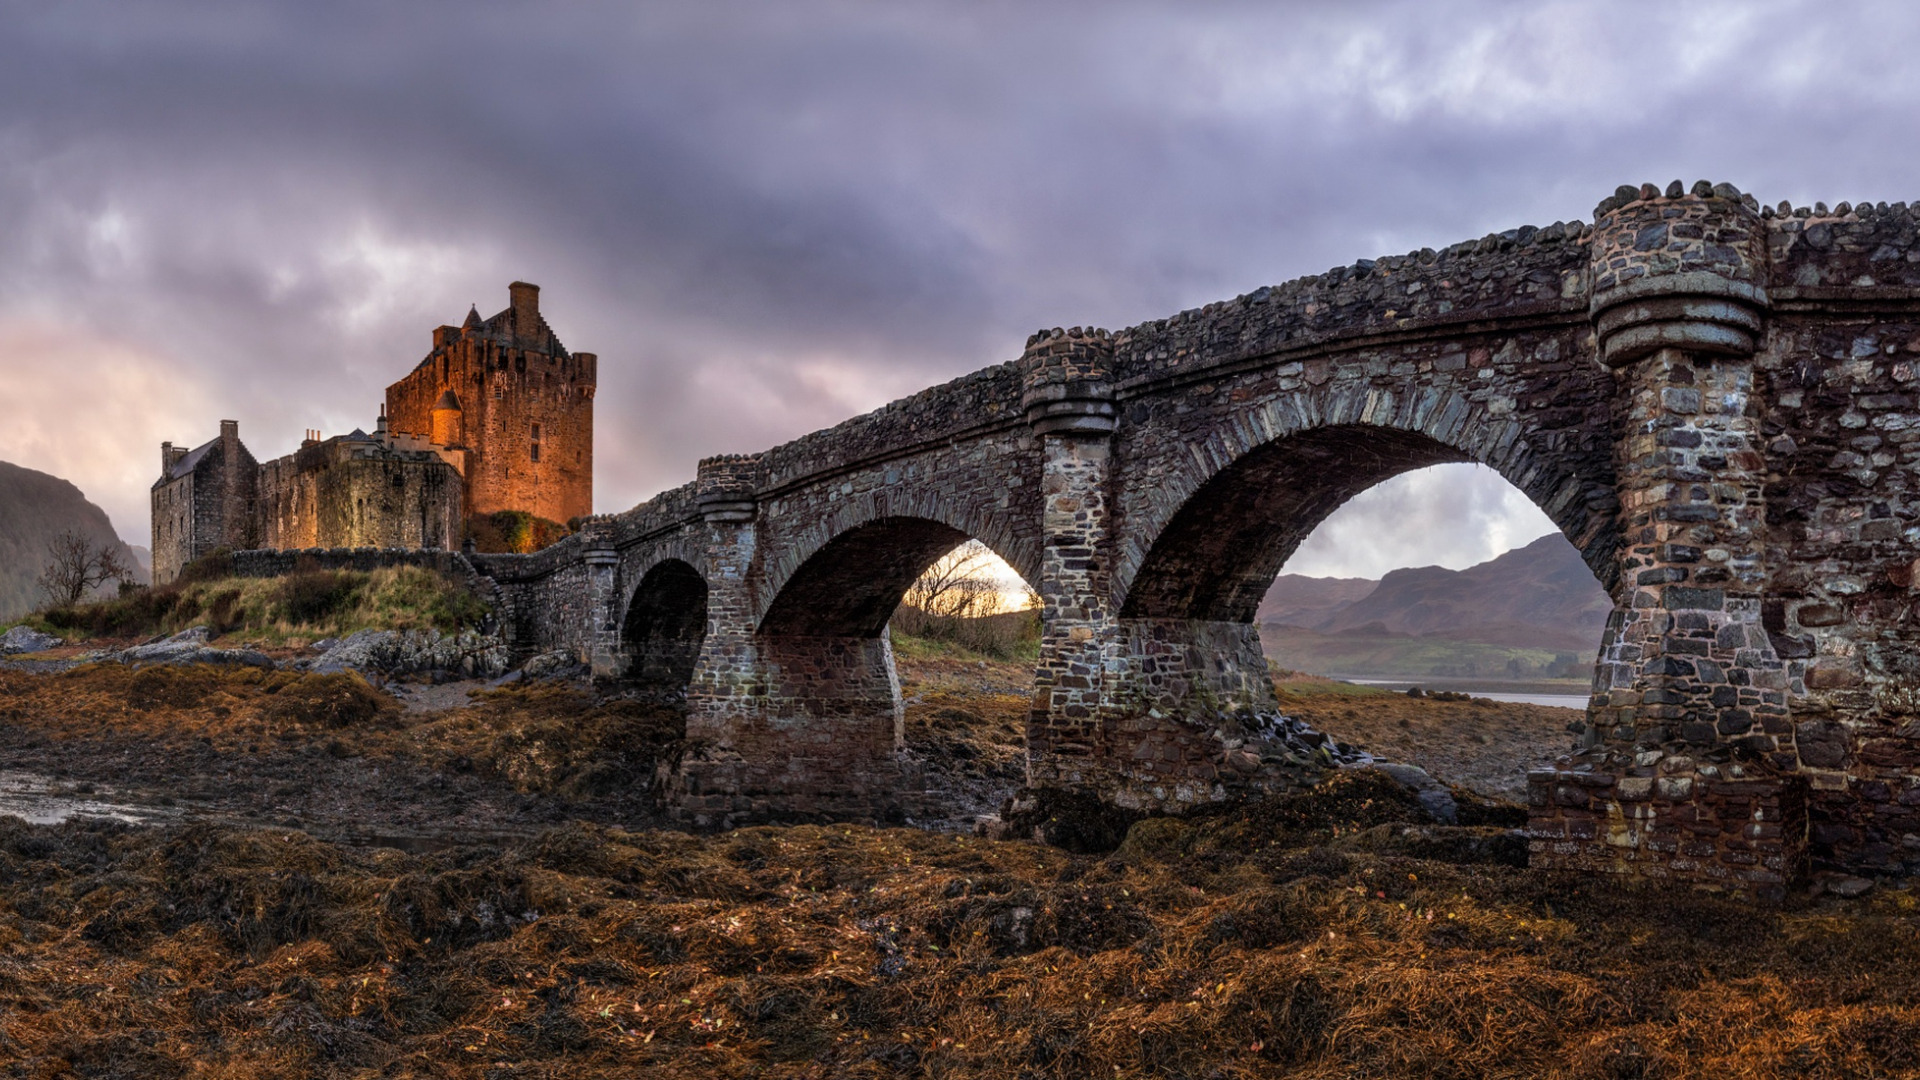 Architecture Castle Medieval Scotland Eilean Donan Bridge Old Bridge Rock Clouds Arch Hills 1920x1080